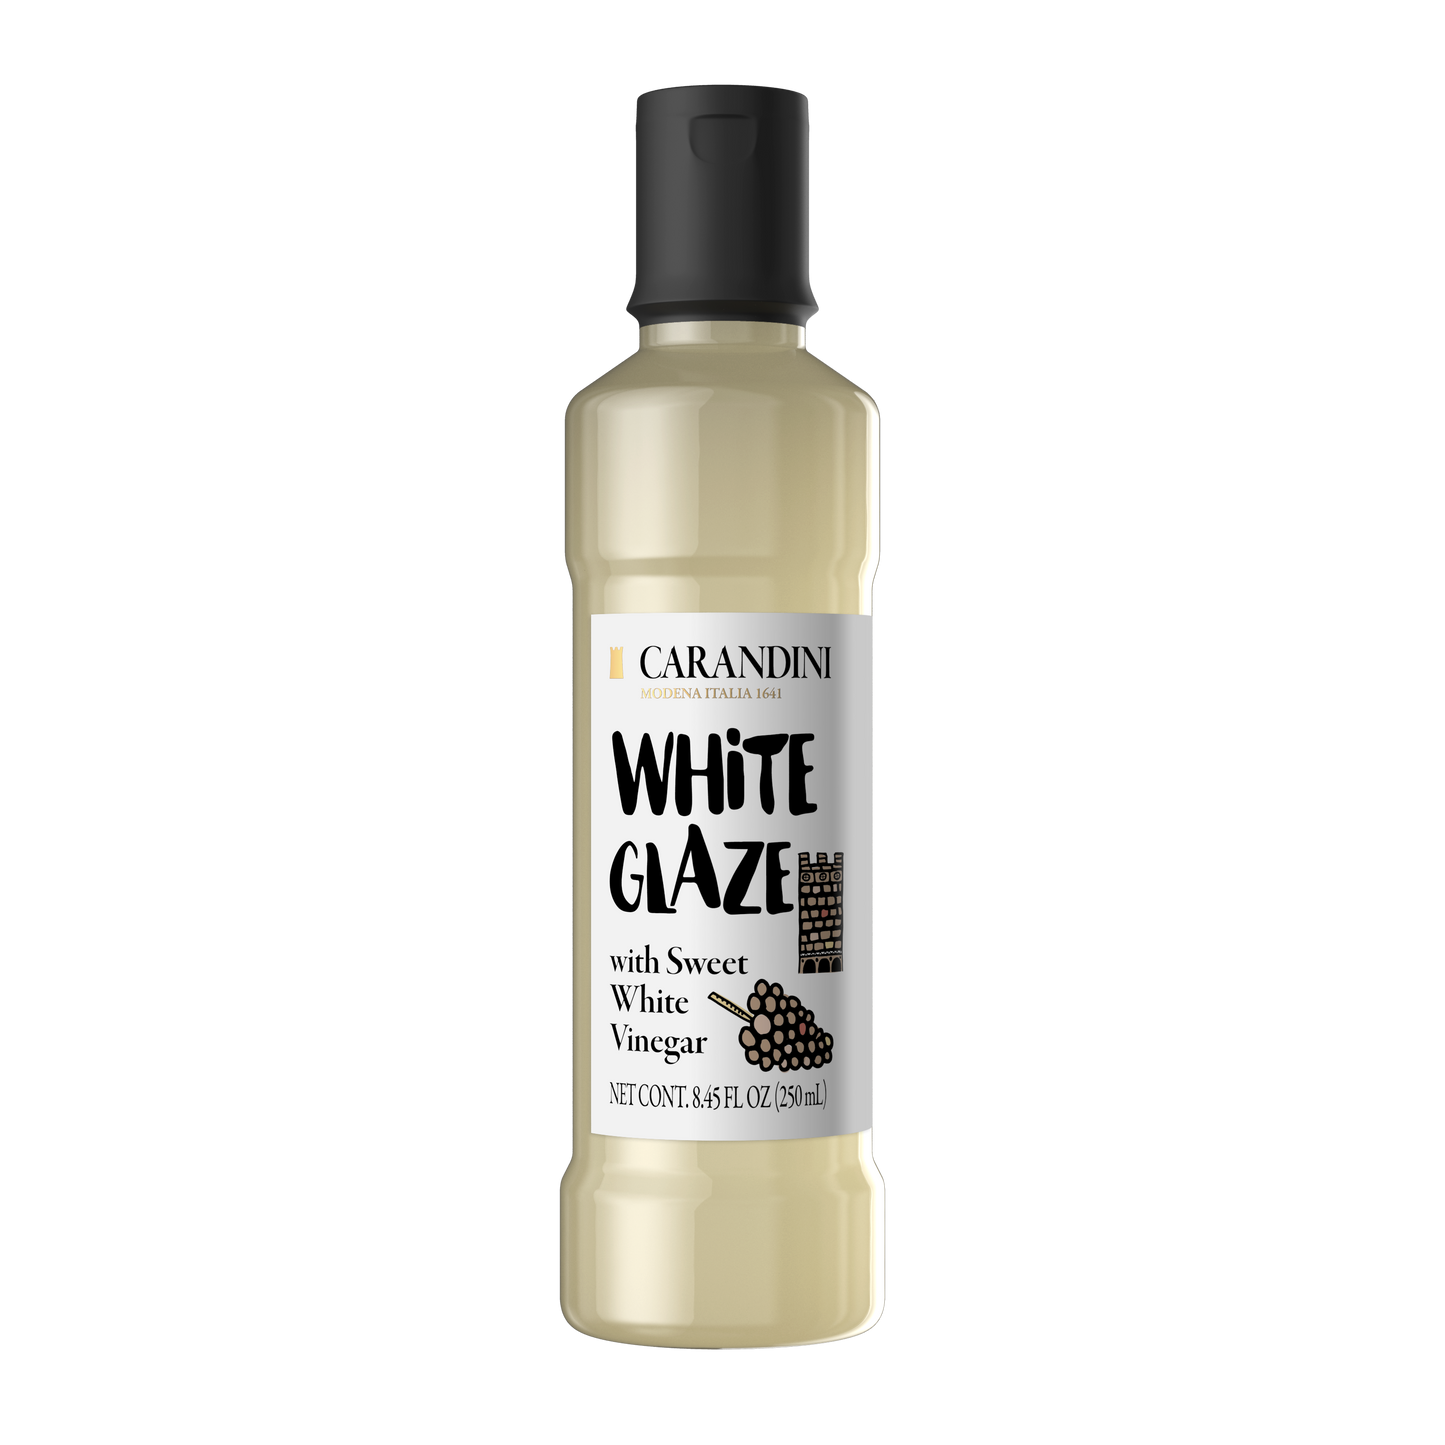 White Glaze with Condimento Bianco